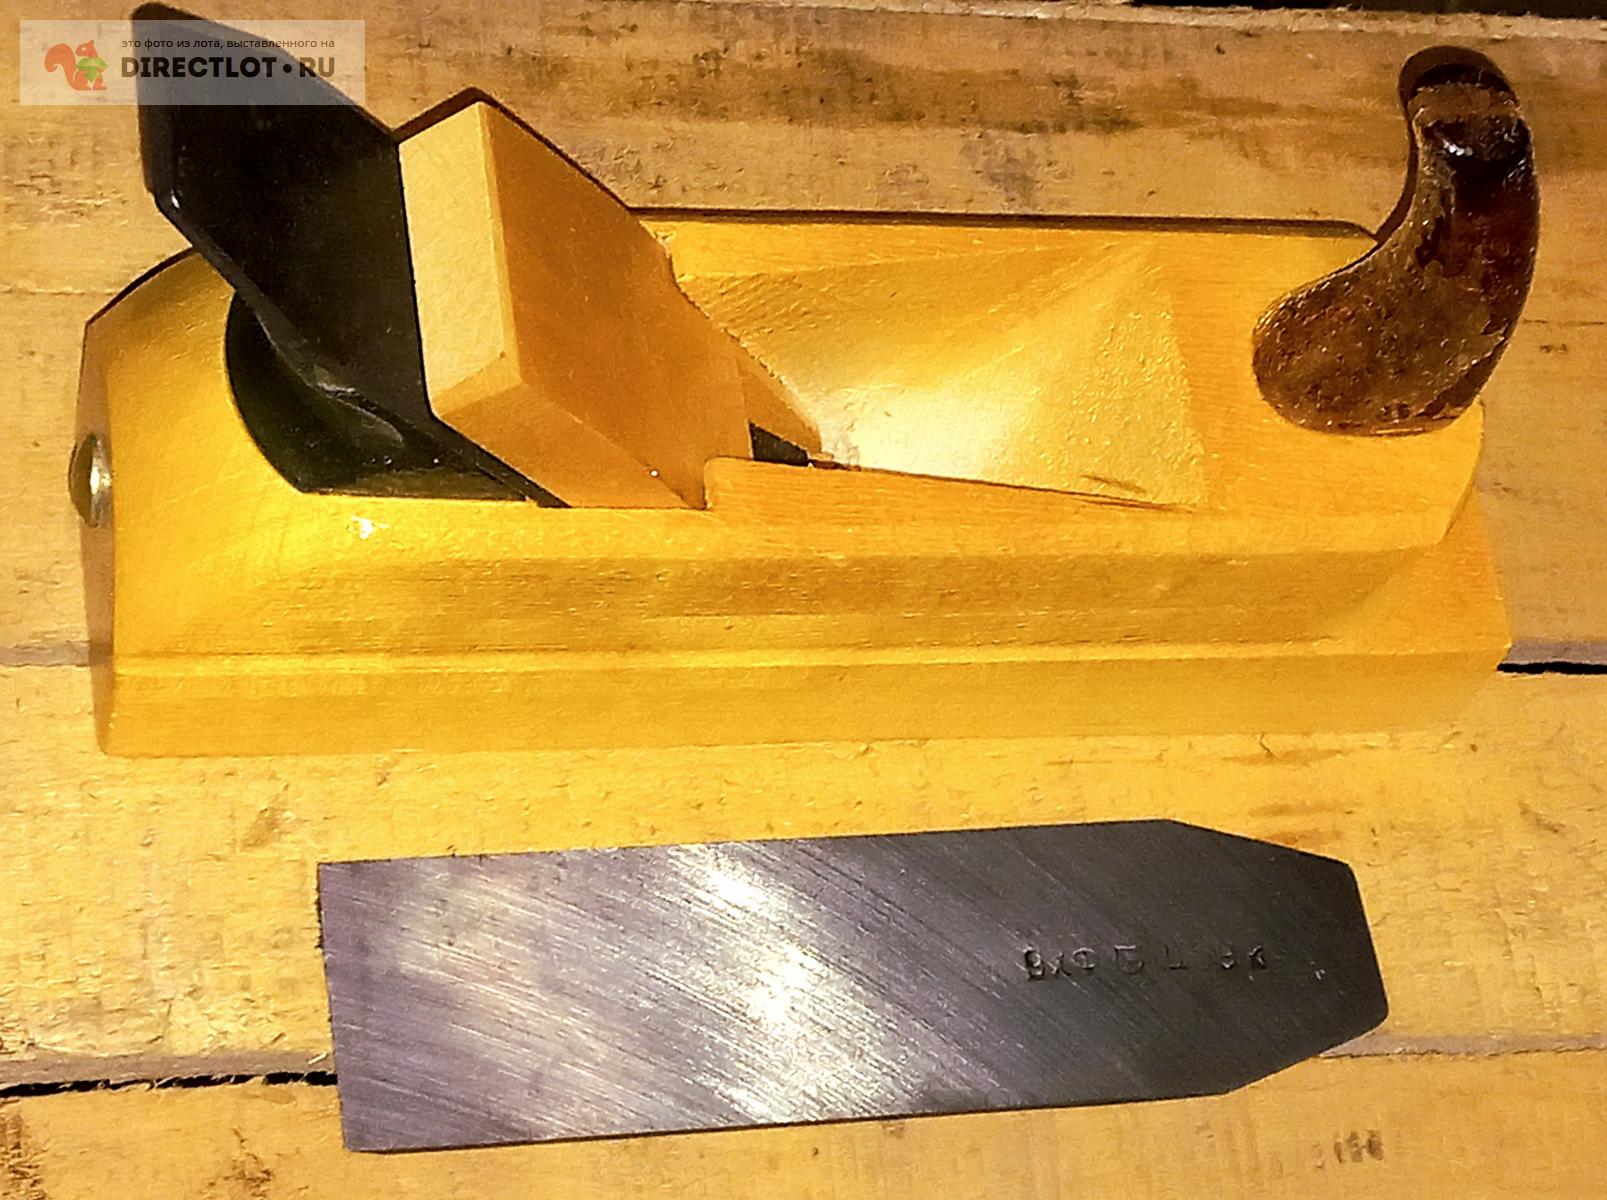  деревянный средний с запасным ножом.   цена 300 Р .